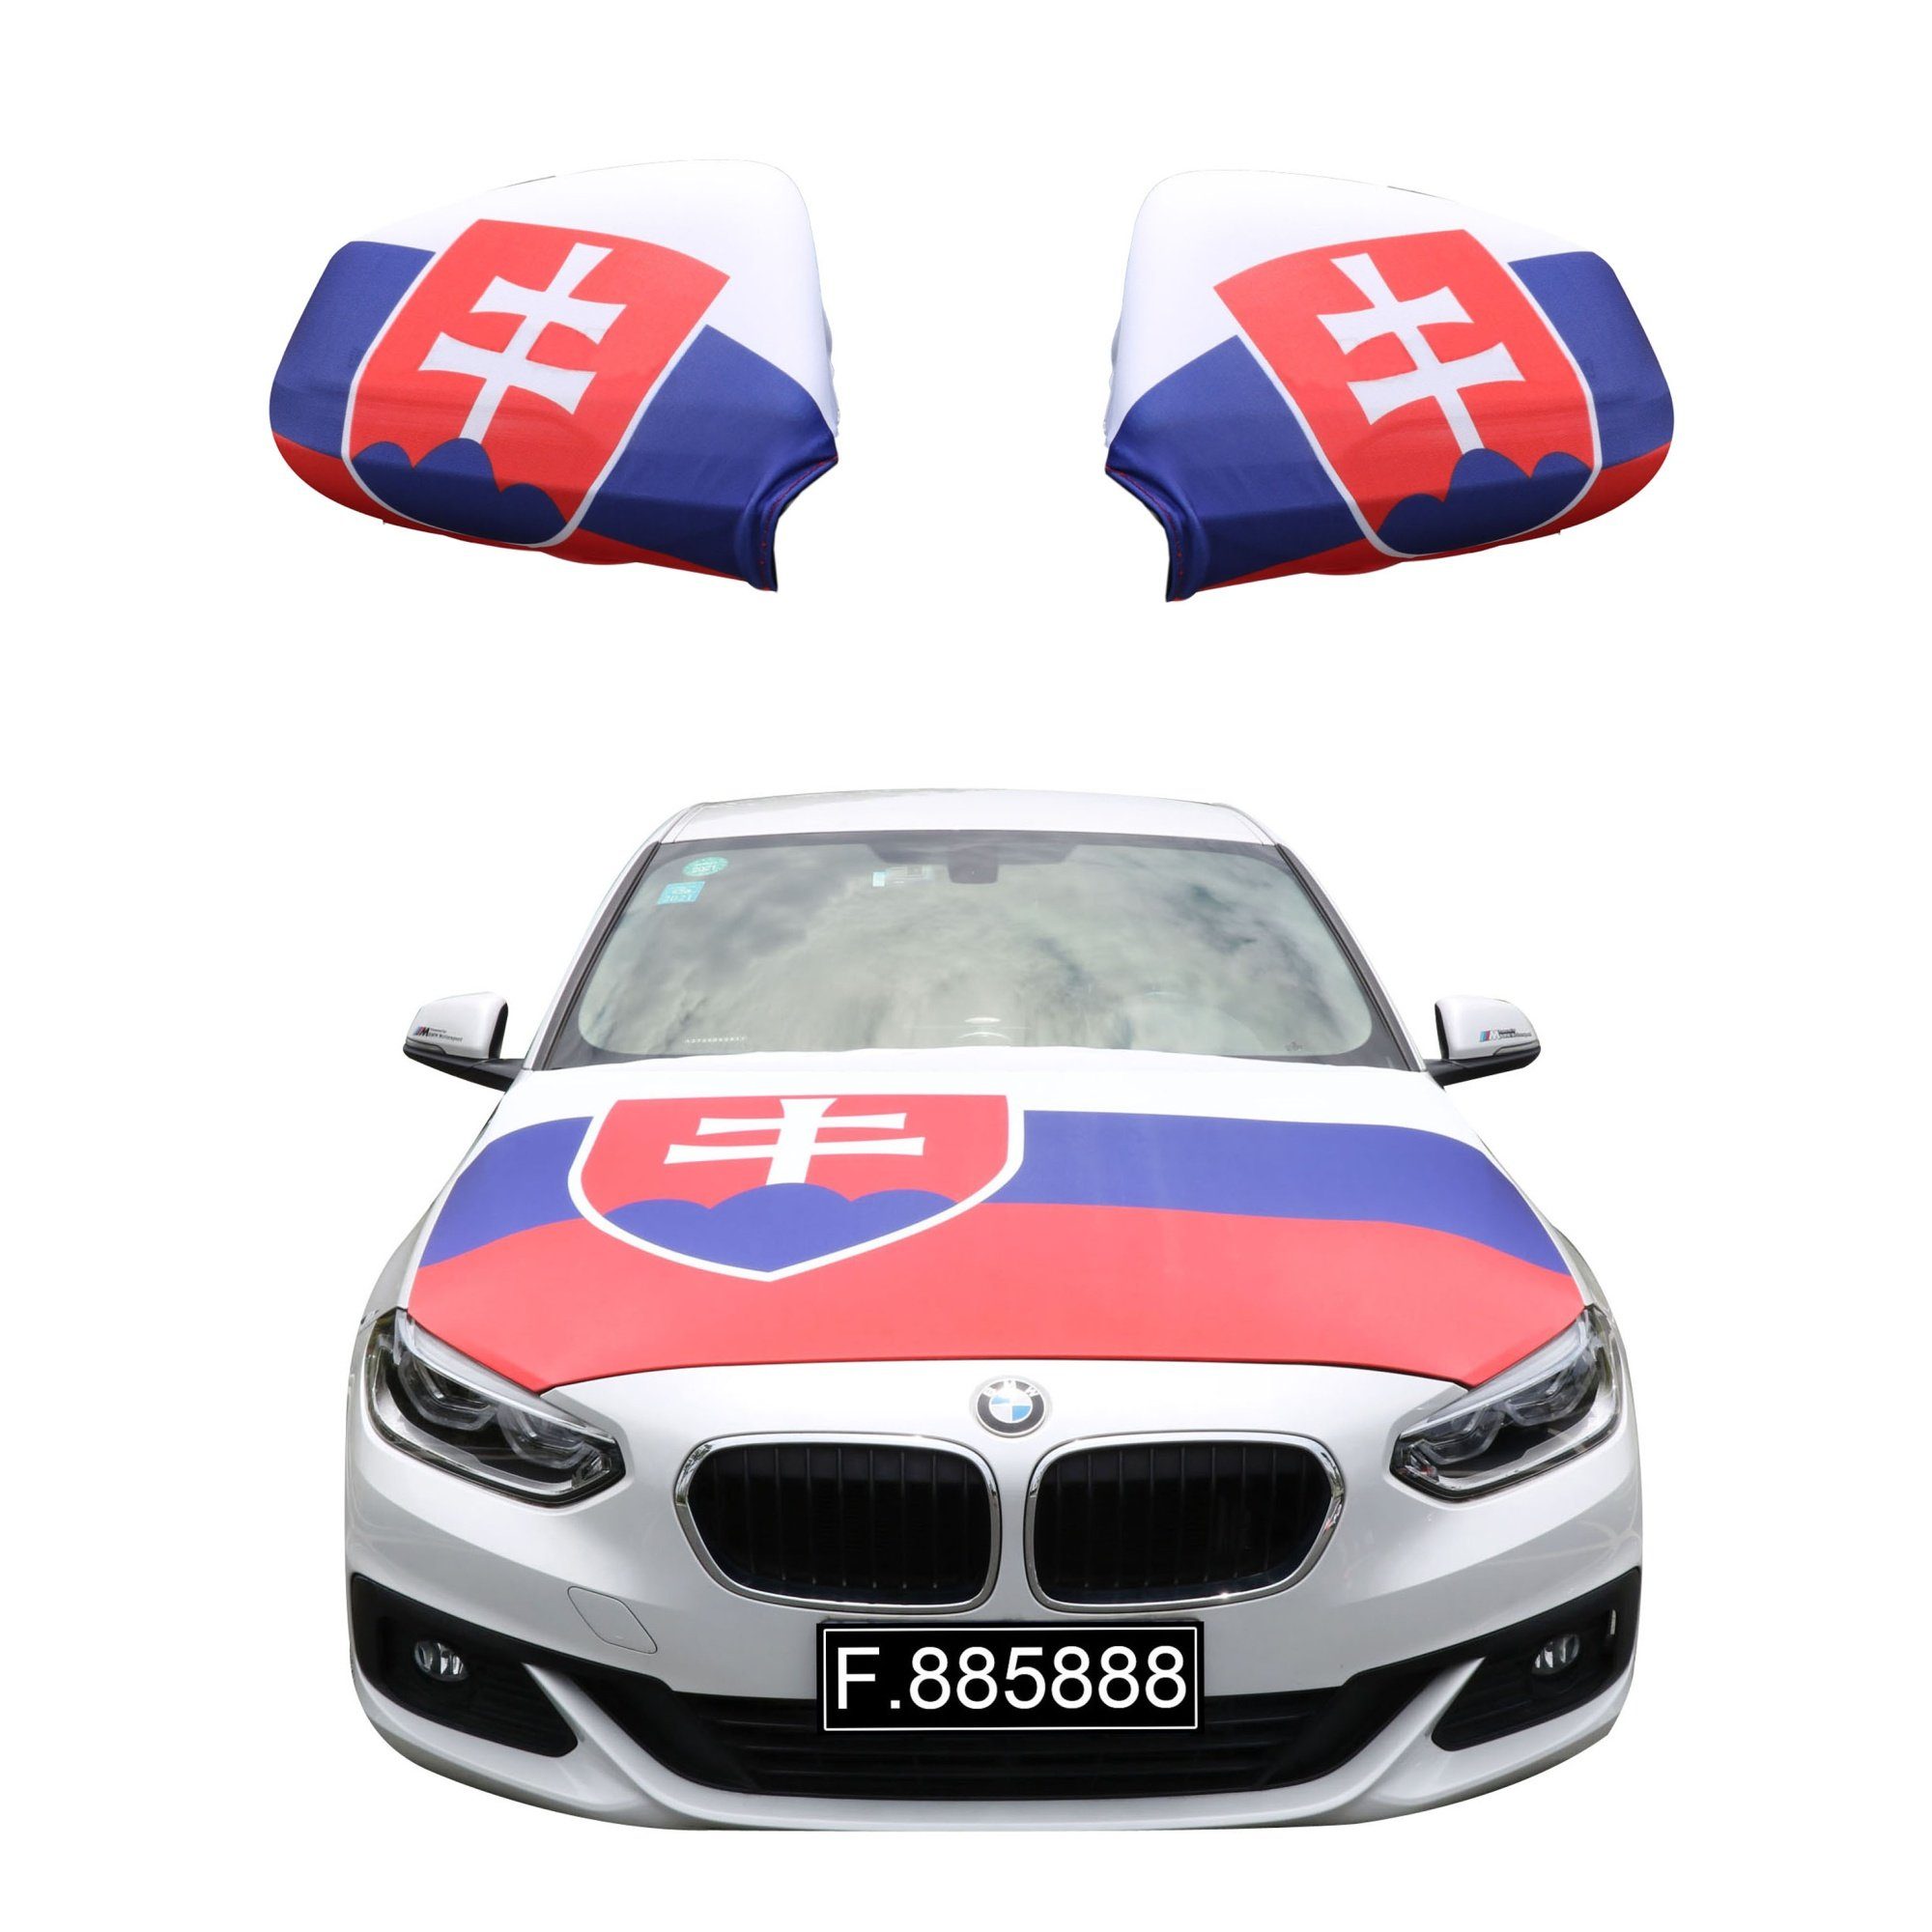 Fahne gängigen Fußball alle Modelle, ca. Außenspiegel 150cm Motorhauben Flagge: 115 "Slowakei" Flagge, PKW für Originelli Motorhaube Slovakia x Fanset Sonia